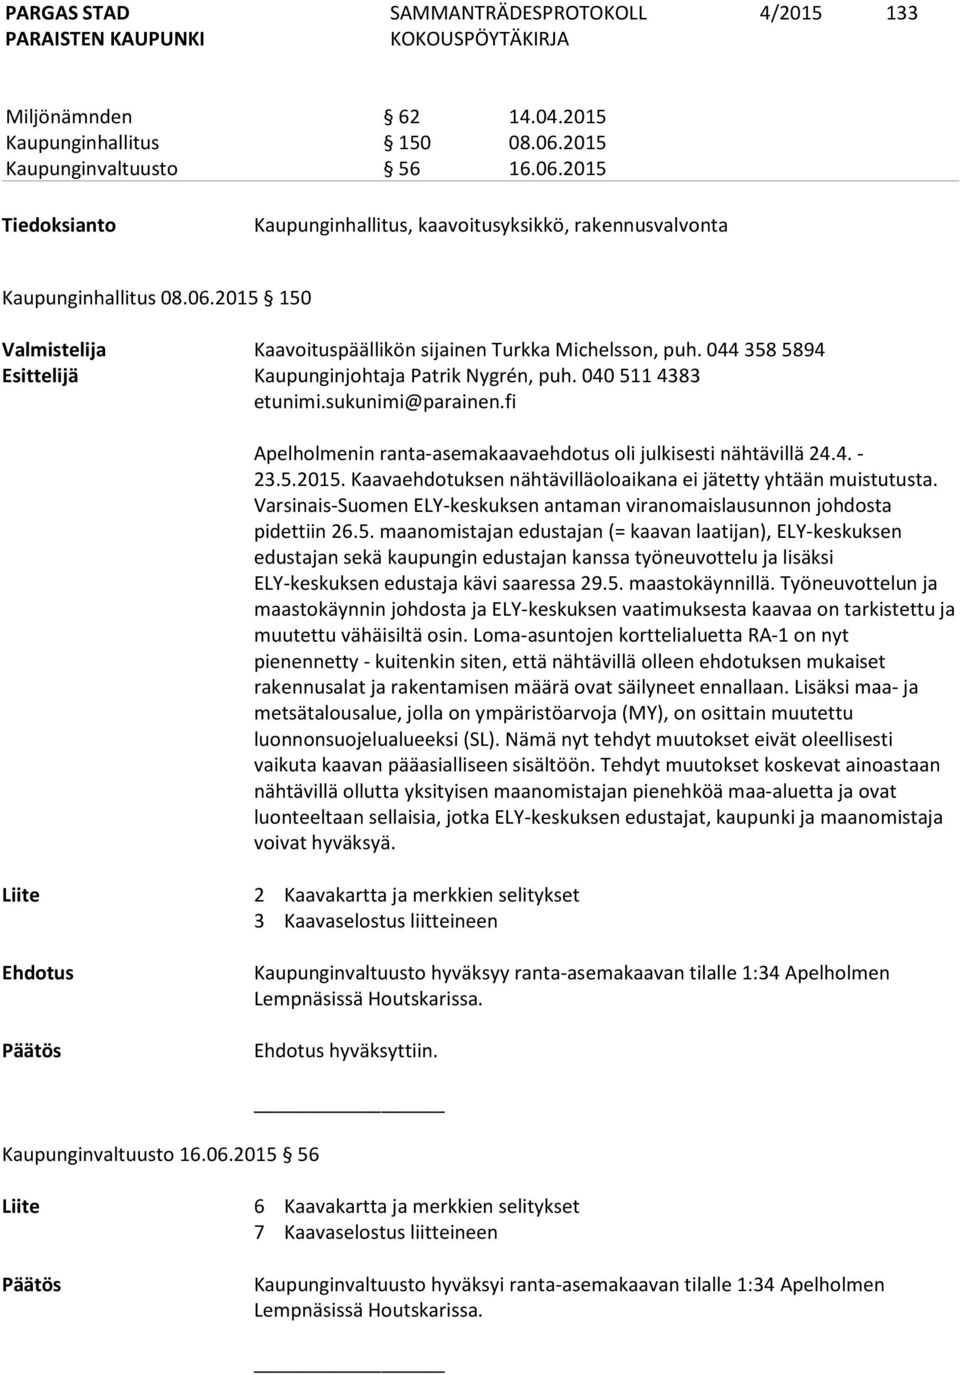 Kaavaehdotuksen nähtävilläoloaikana ei jätetty yhtään muistutusta. Varsinais-Suomen ELY-keskuksen antaman viranomaislausunnon johdosta pidettiin 26.5.